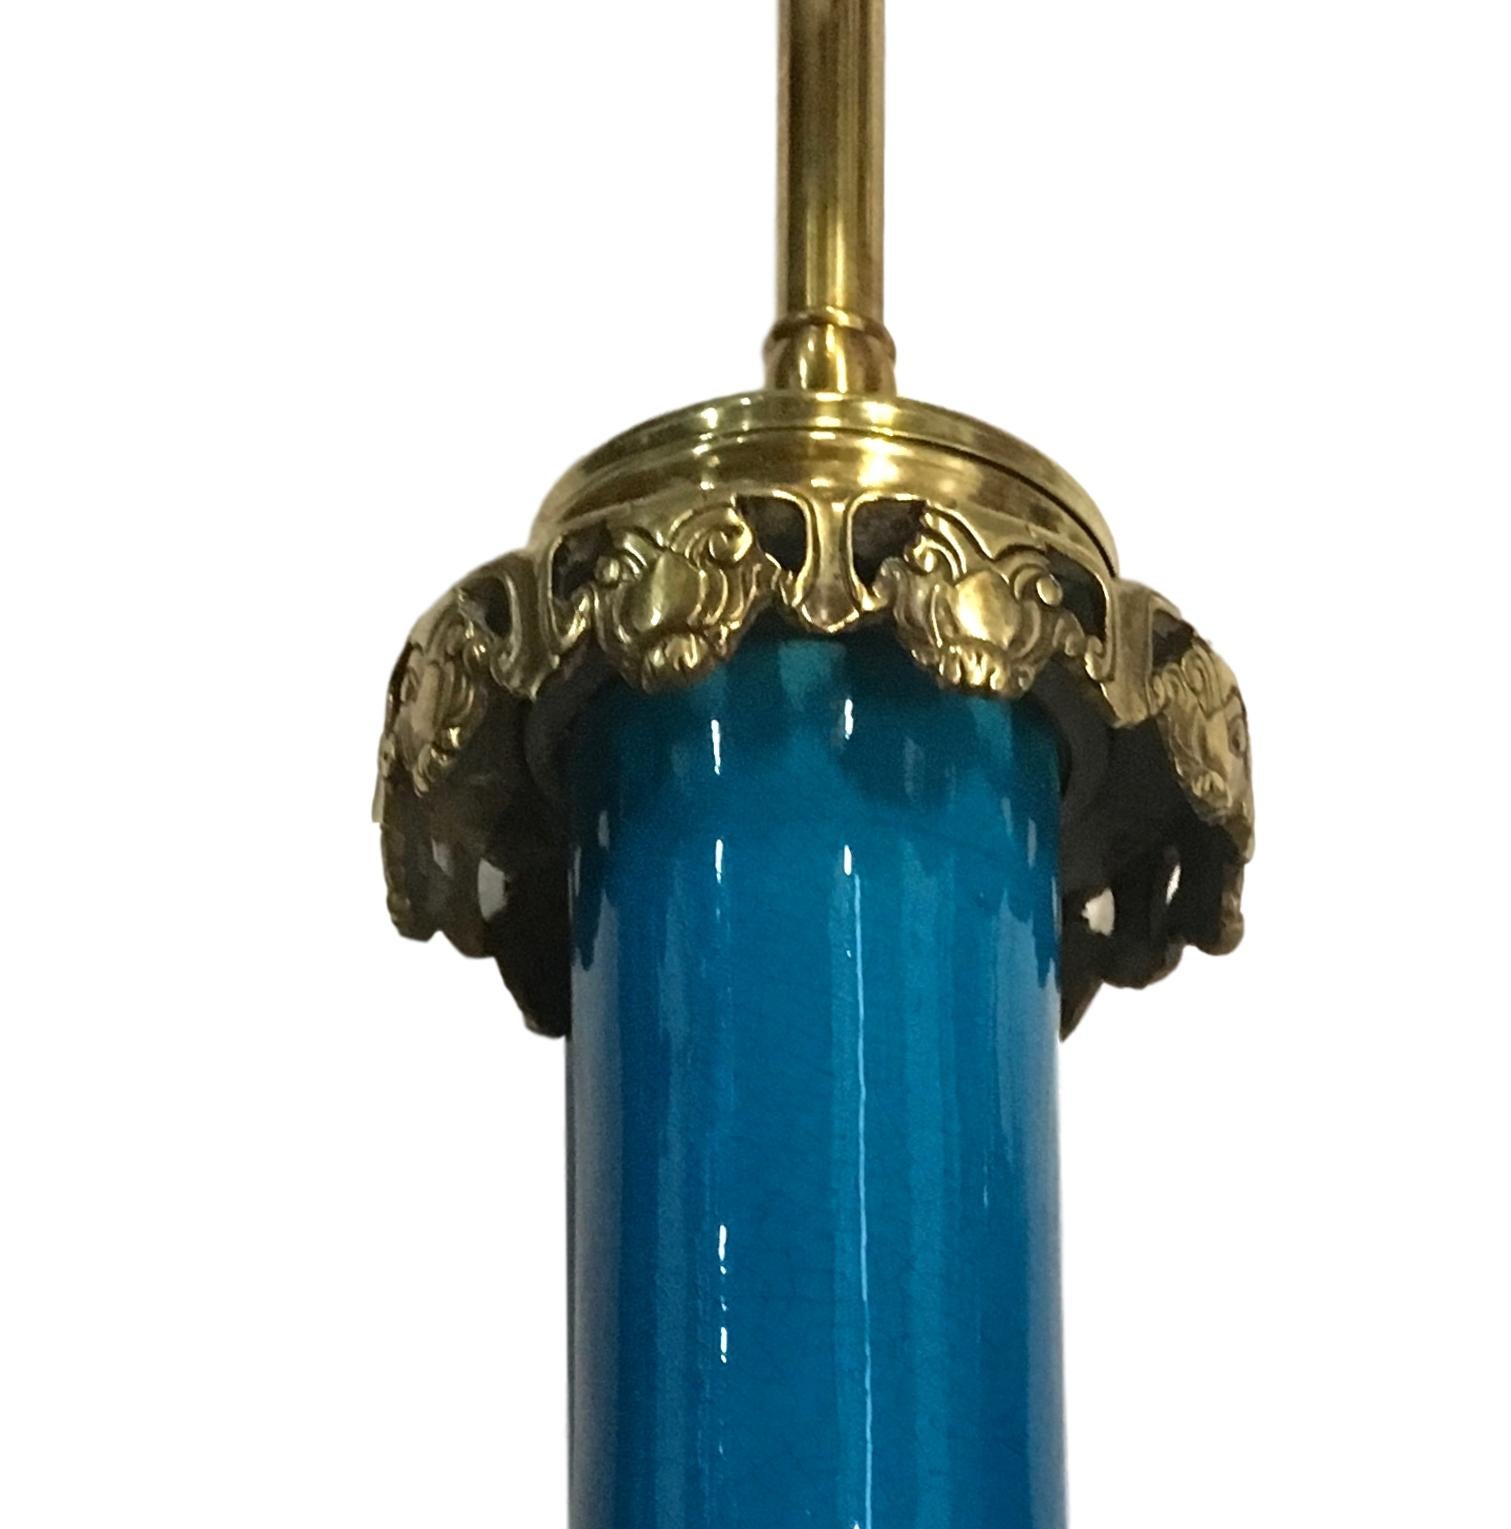 Paire de lampes de table en porcelaine française des années 1930, en émail bleu royal, avec des bases et des accessoires en bronze doré.

Mesures :
Hauteur du corps : 15
Diamètre au plus large : 8